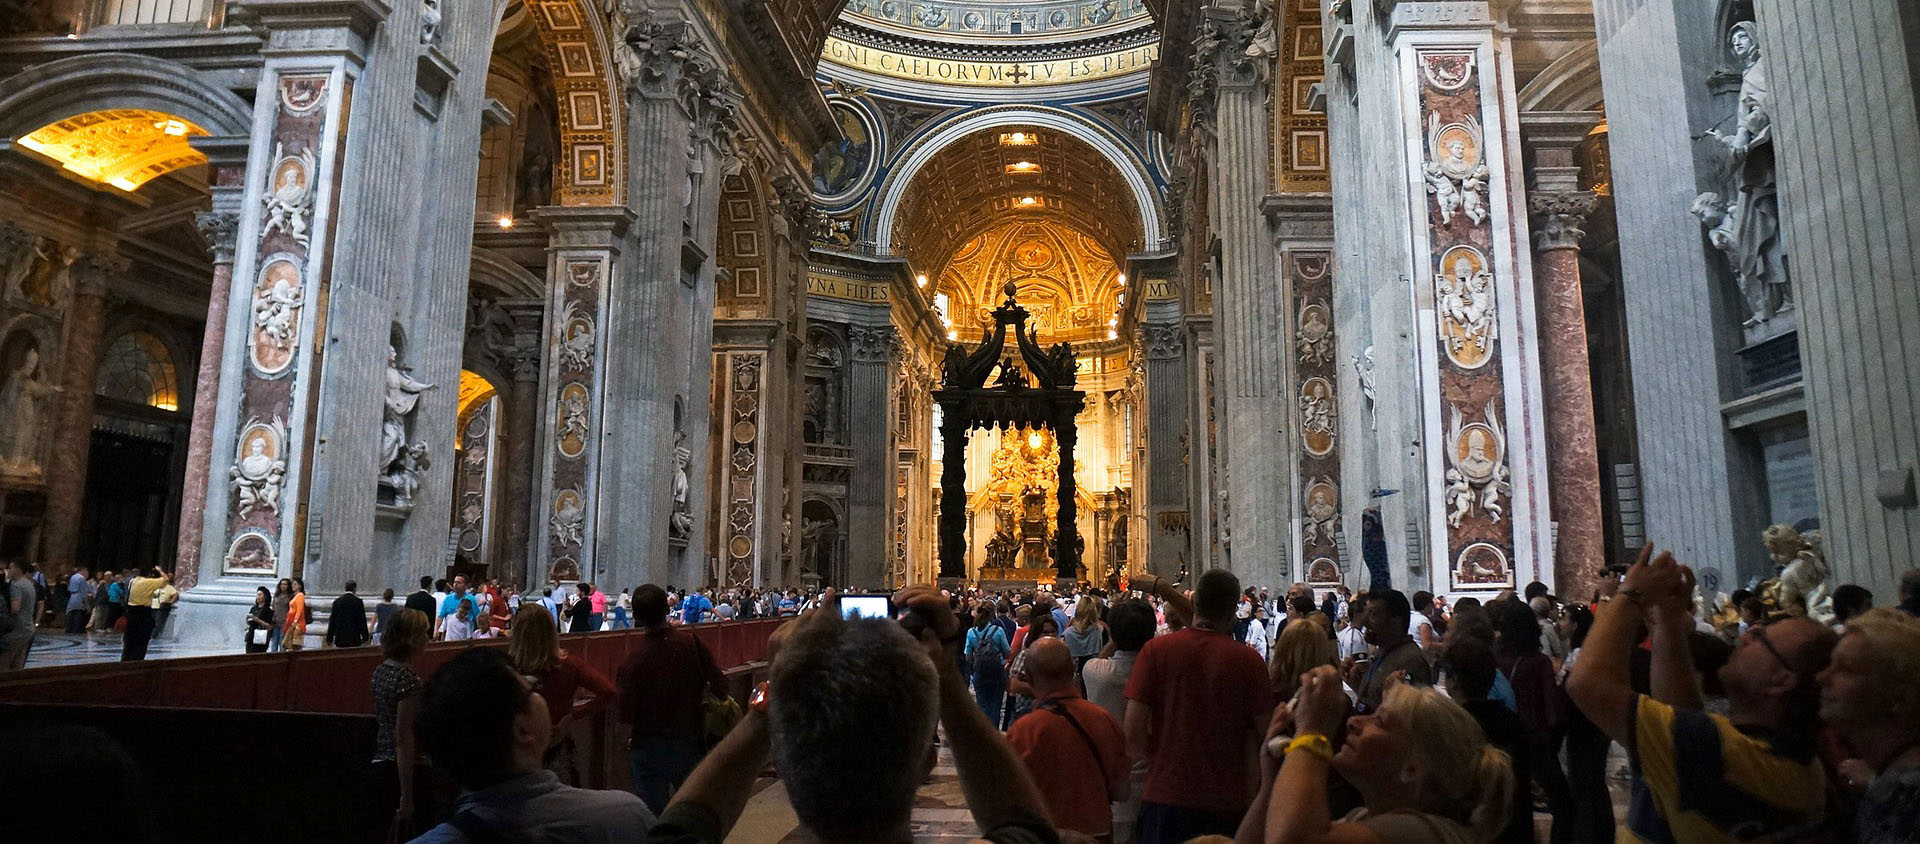 Jusqu'à 50'000 personnes visitent la basilique Saint-Pierre chaque jour | © Pixabay